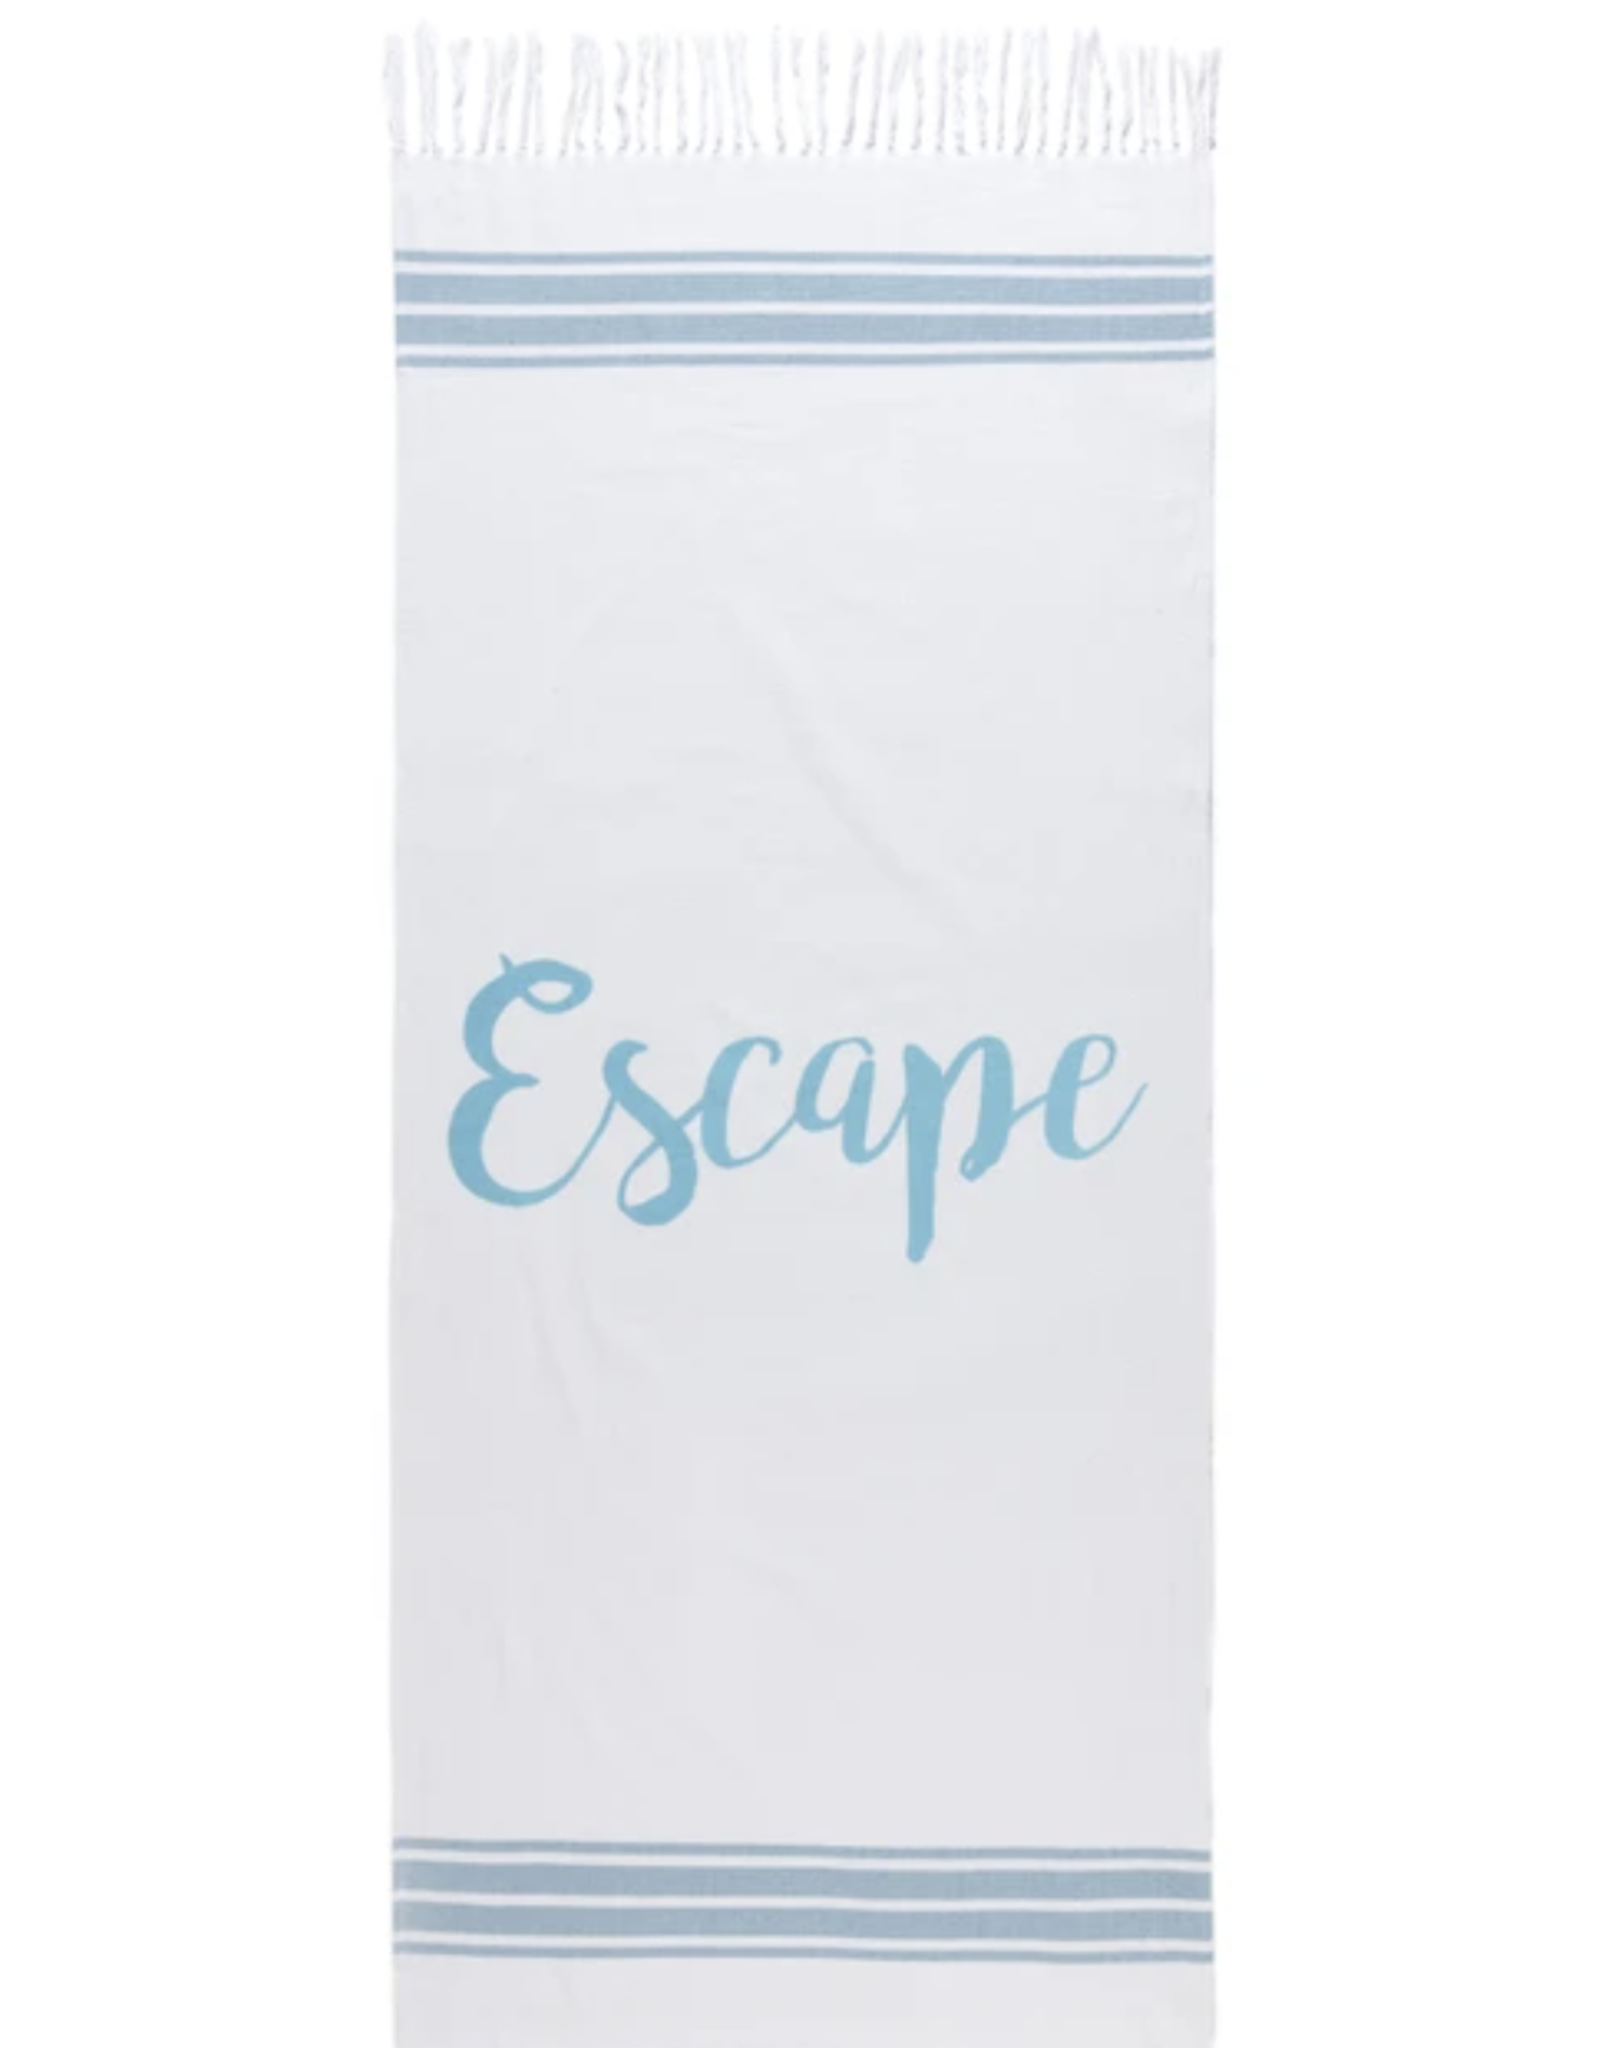 Escape Beach Towel and bag